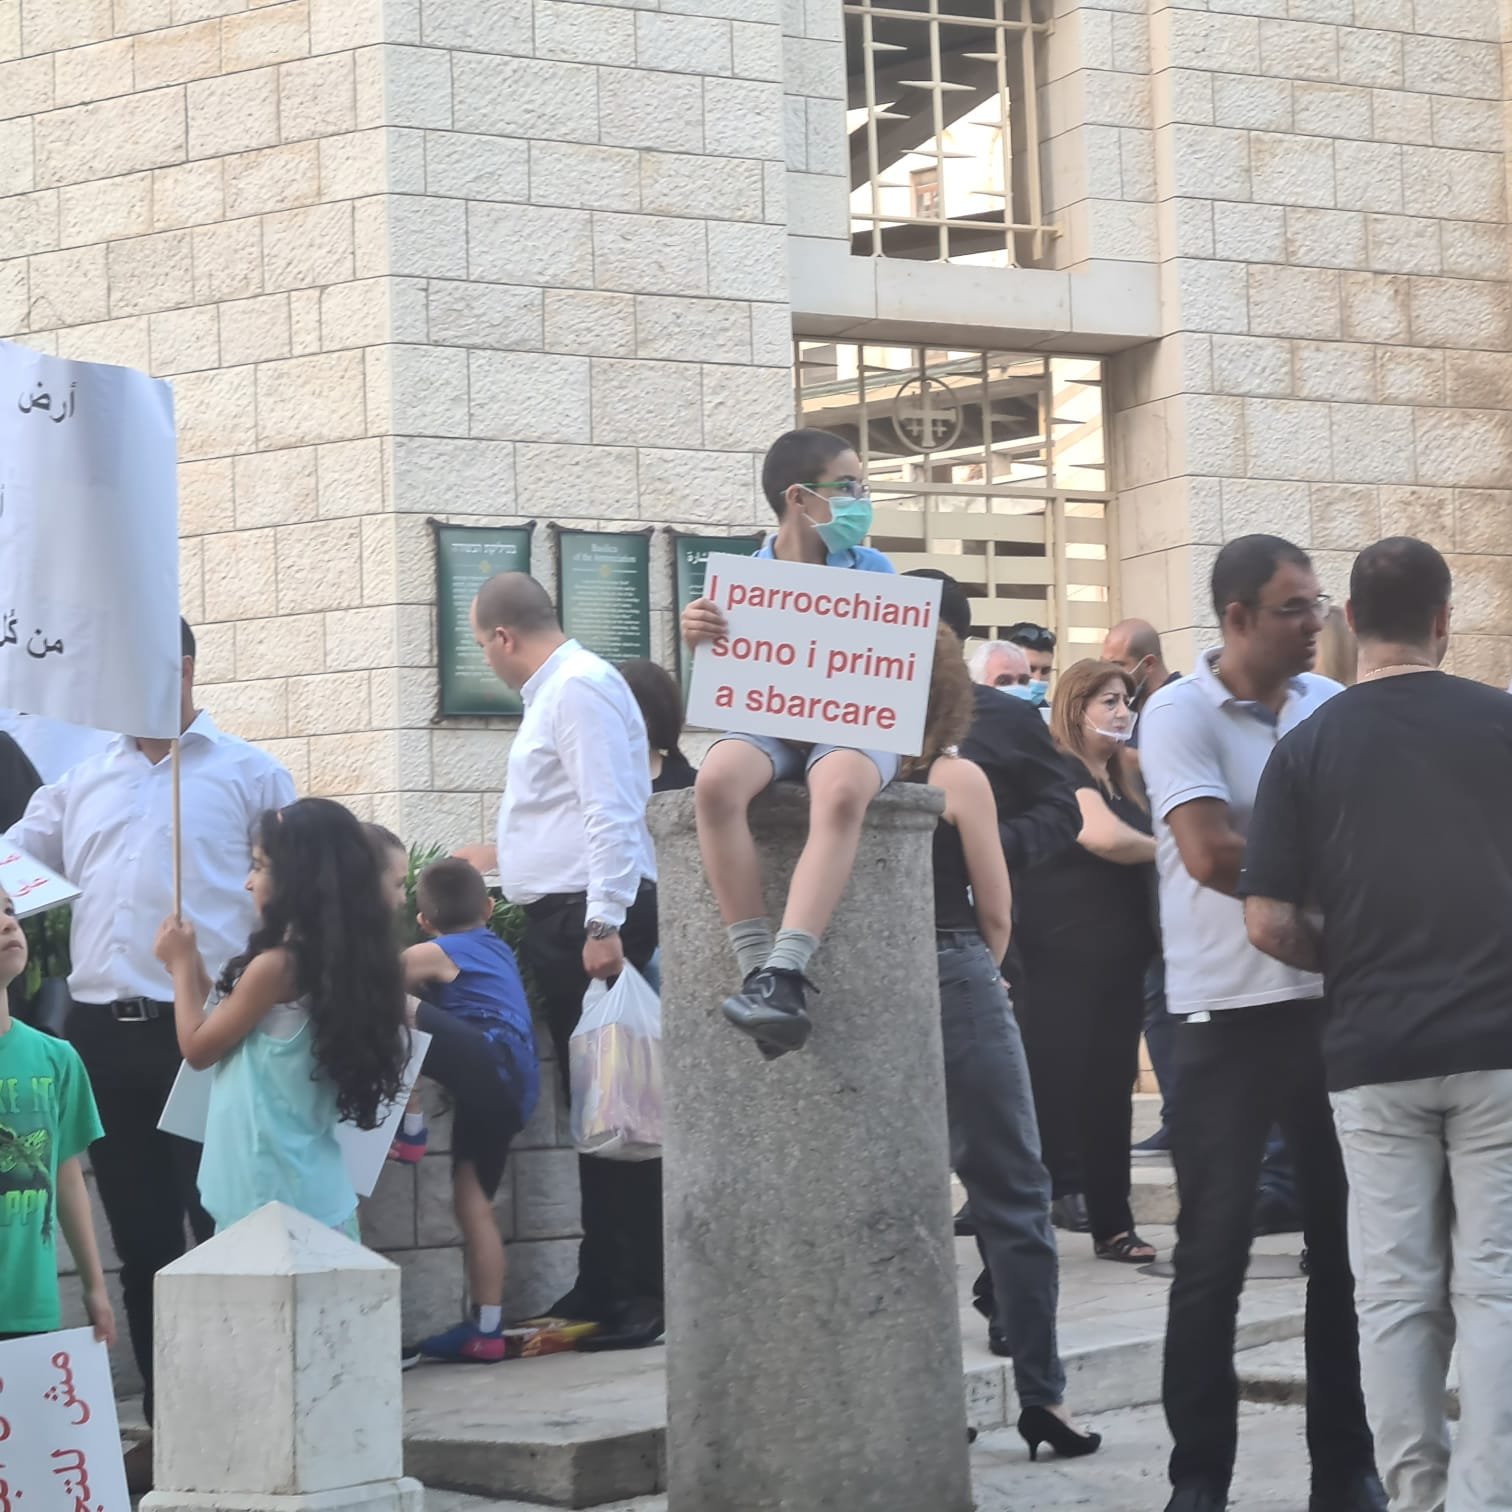 مباشر، الناصرة: مسيرة شموع وتظاهرة احتجاجية ضد صفقات بيع الاراضي بعنوان "ارض البشارة مش للتجارة"-7